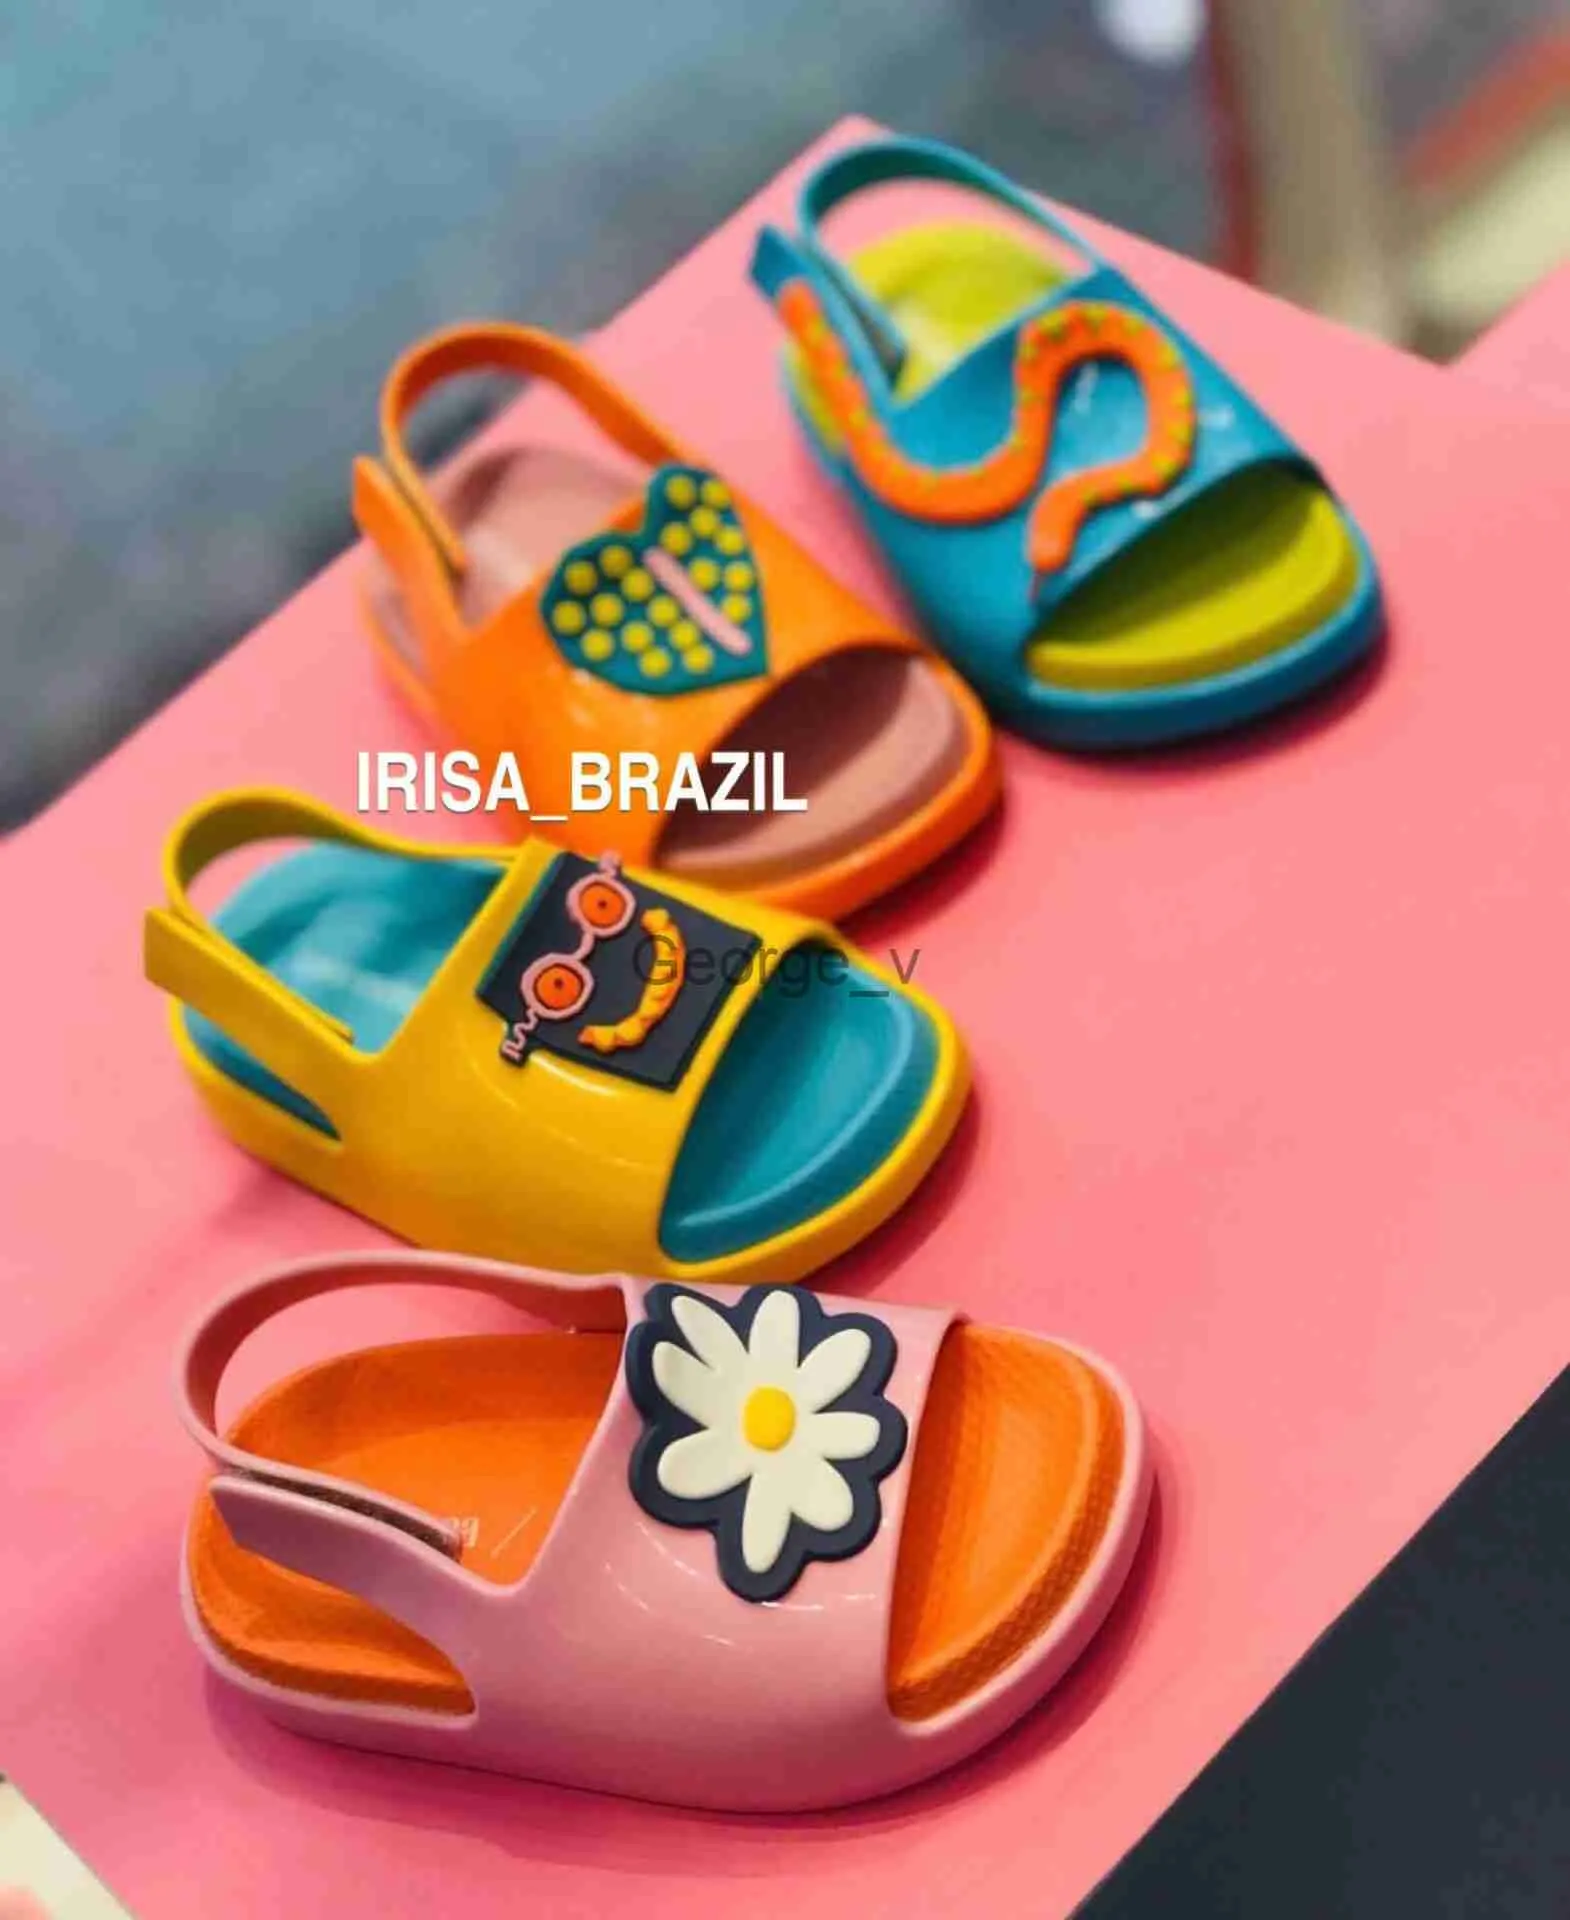 Sandales Brésil Mini Melissa Enfants Jelly Chaussures Cartoon Mode Enfants Sandales D'été Bébé garçon Fille Confortable Chaussures De Plage HMI084 J230703